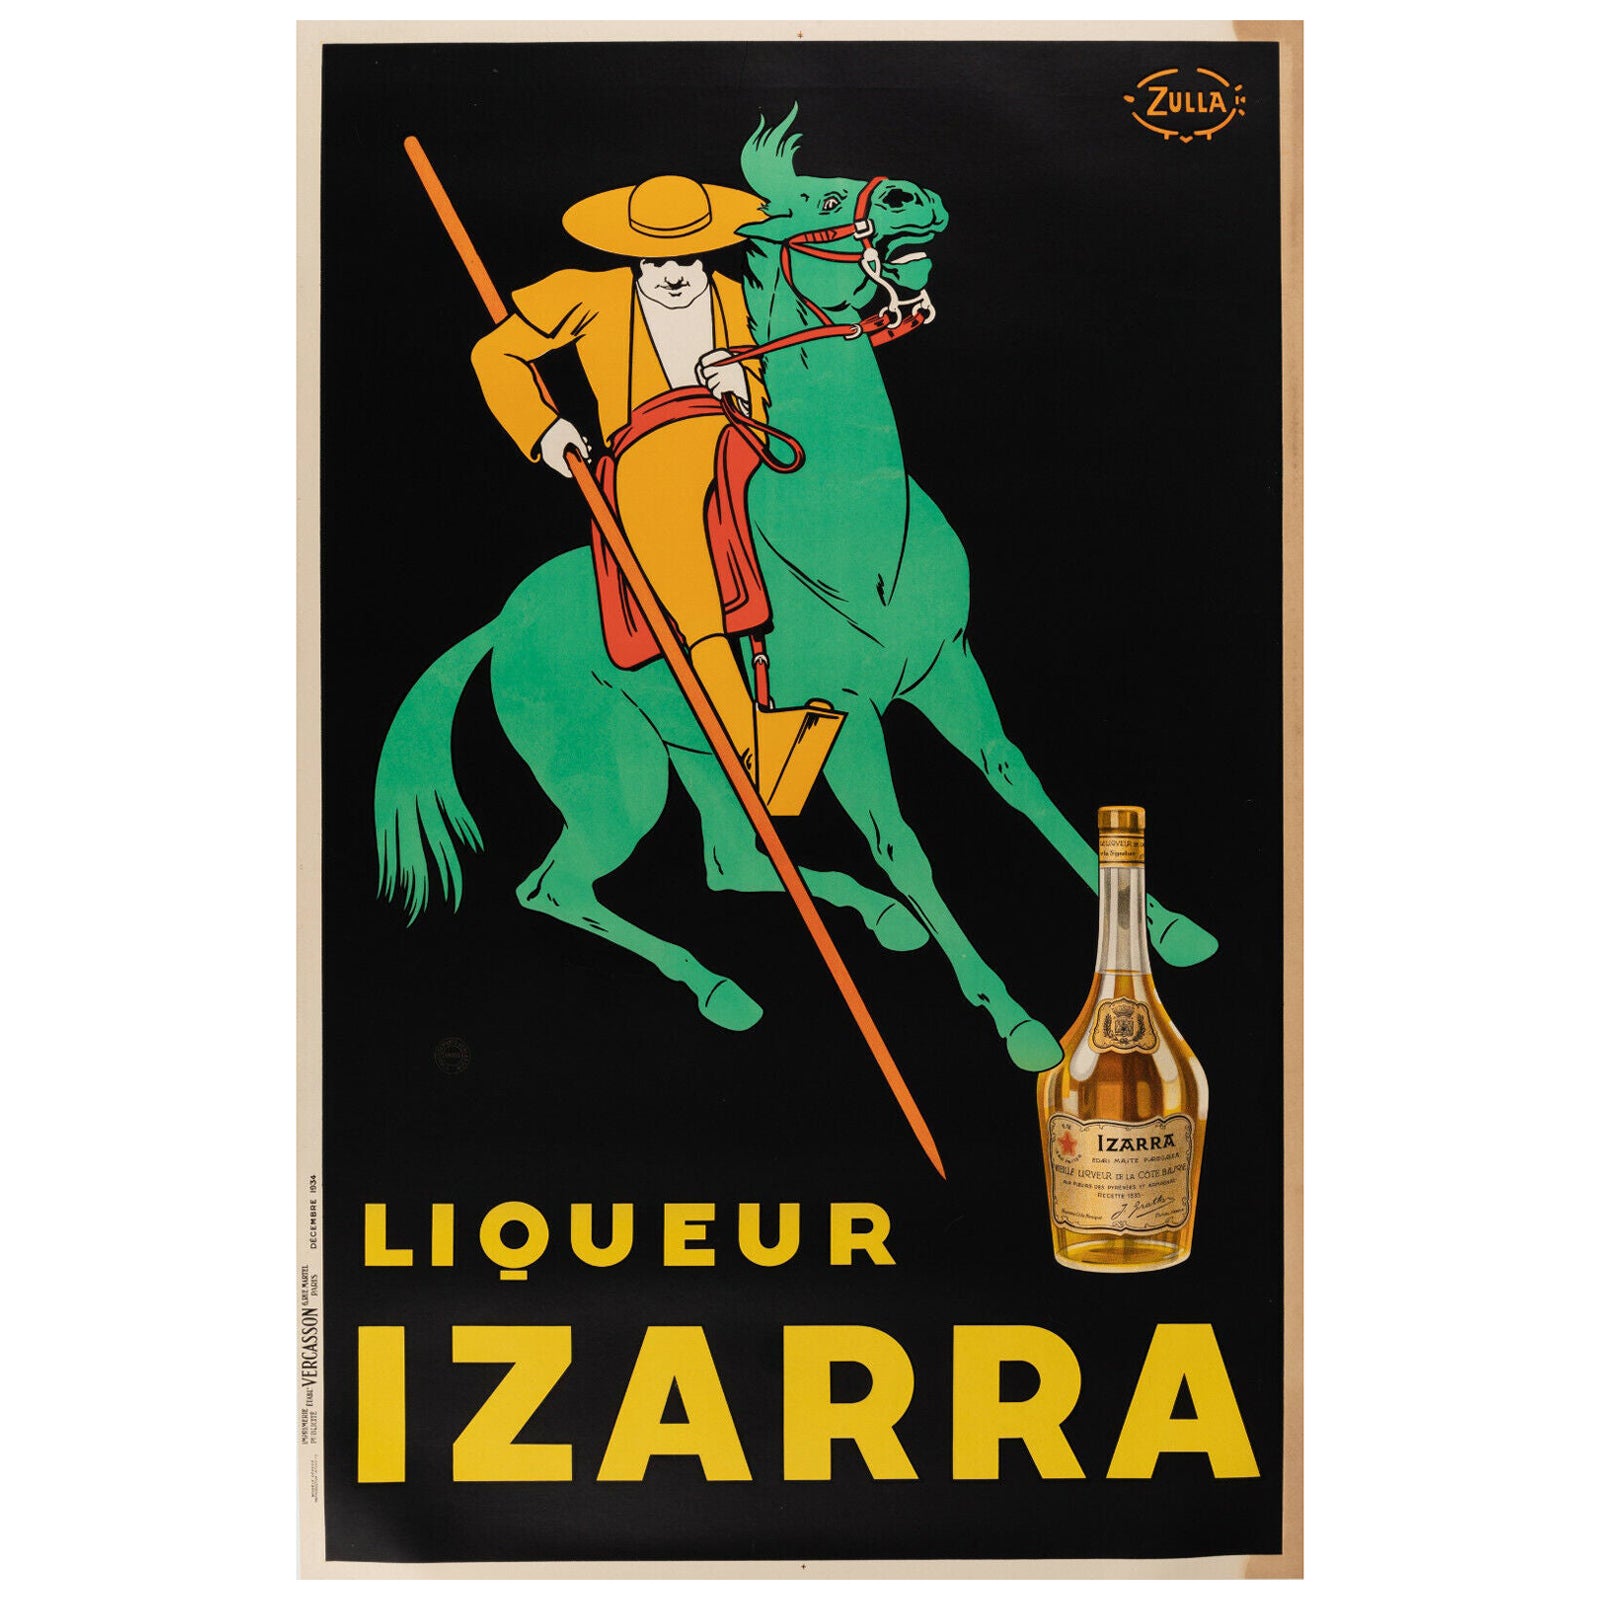 Original Vintage Poster-Ula-I-Arra Liqueur-Alcohol-France, 1934 For Sale